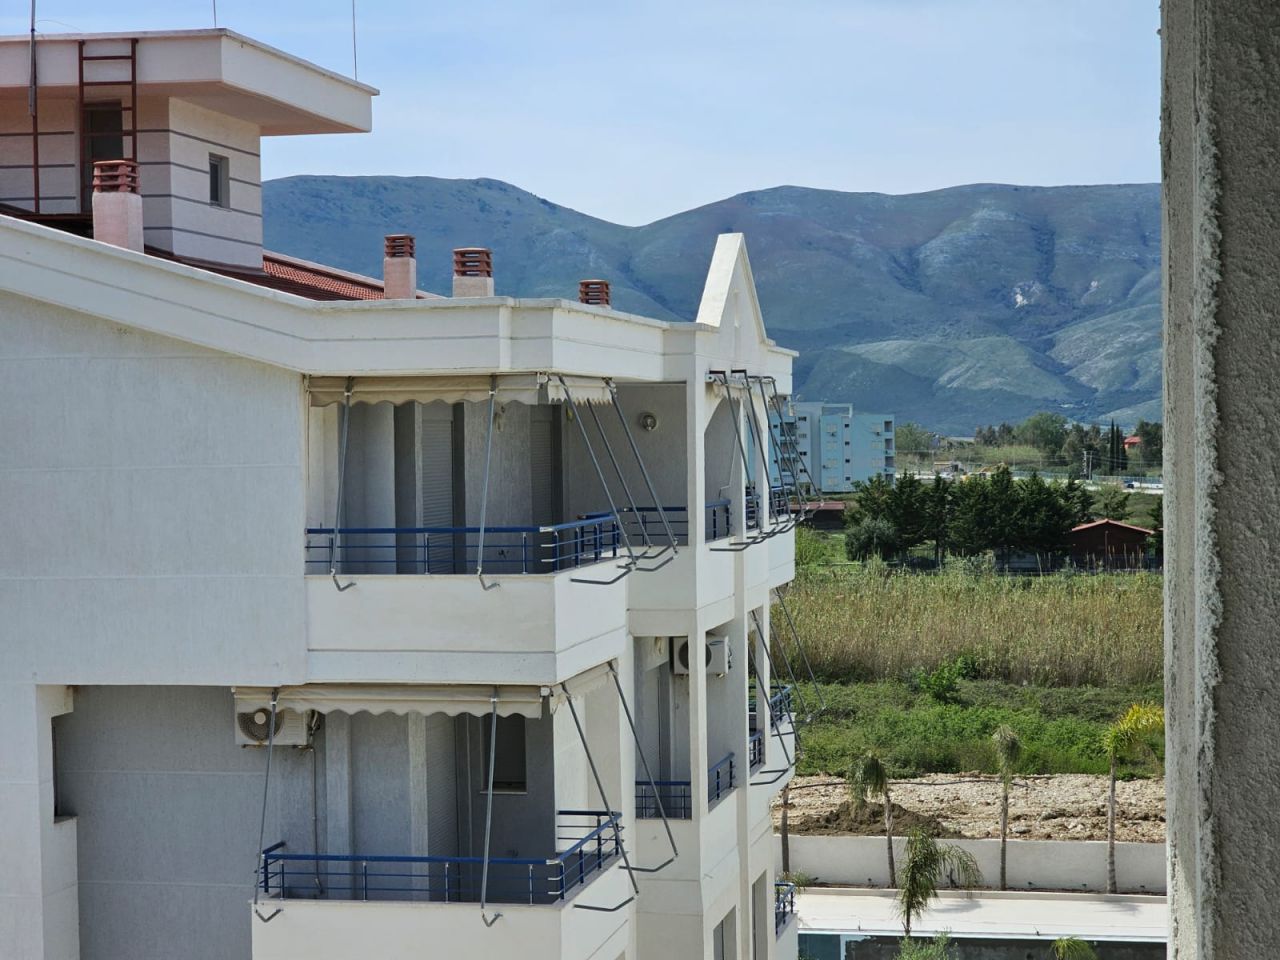 Leilighet Til Salgs I Vlora Albania, Beliggende I Et Panoramaområde, Nær Stranden